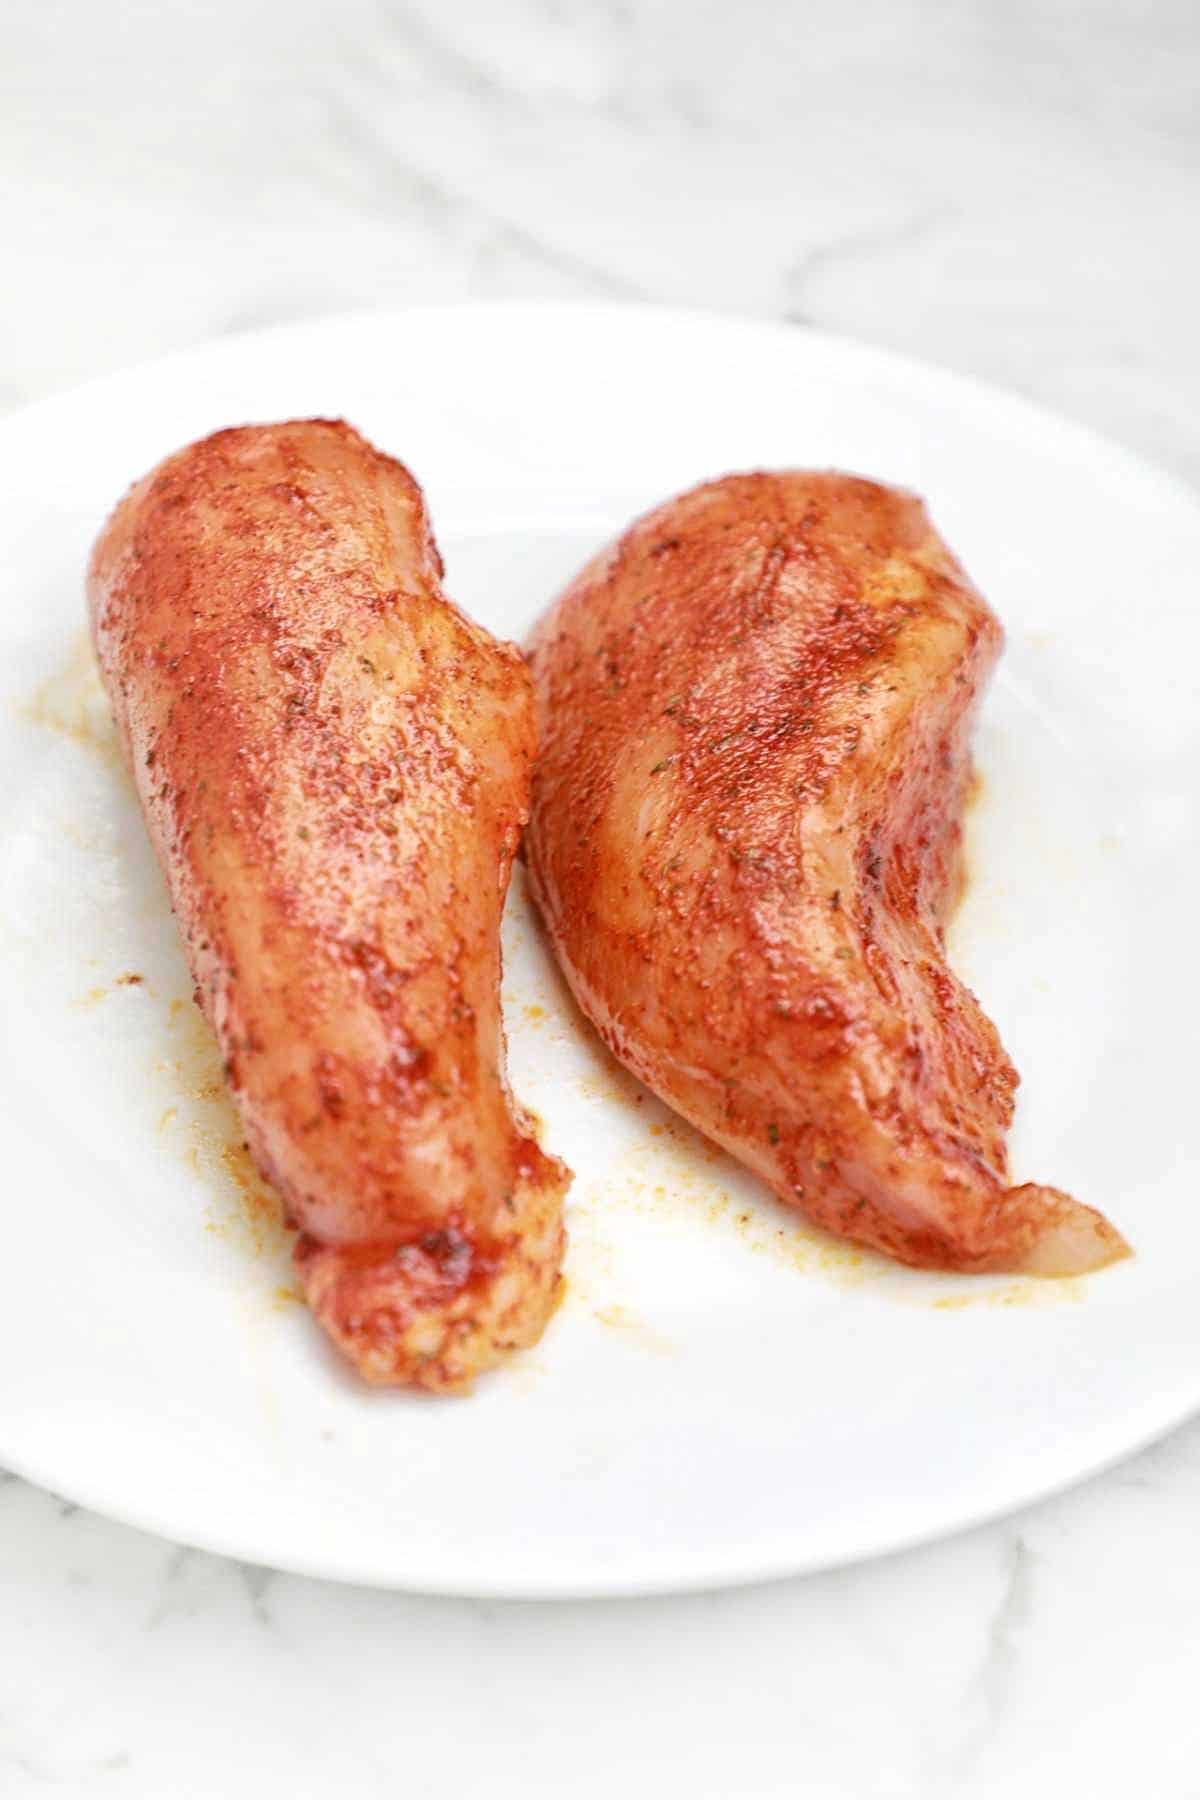 marinated chicken